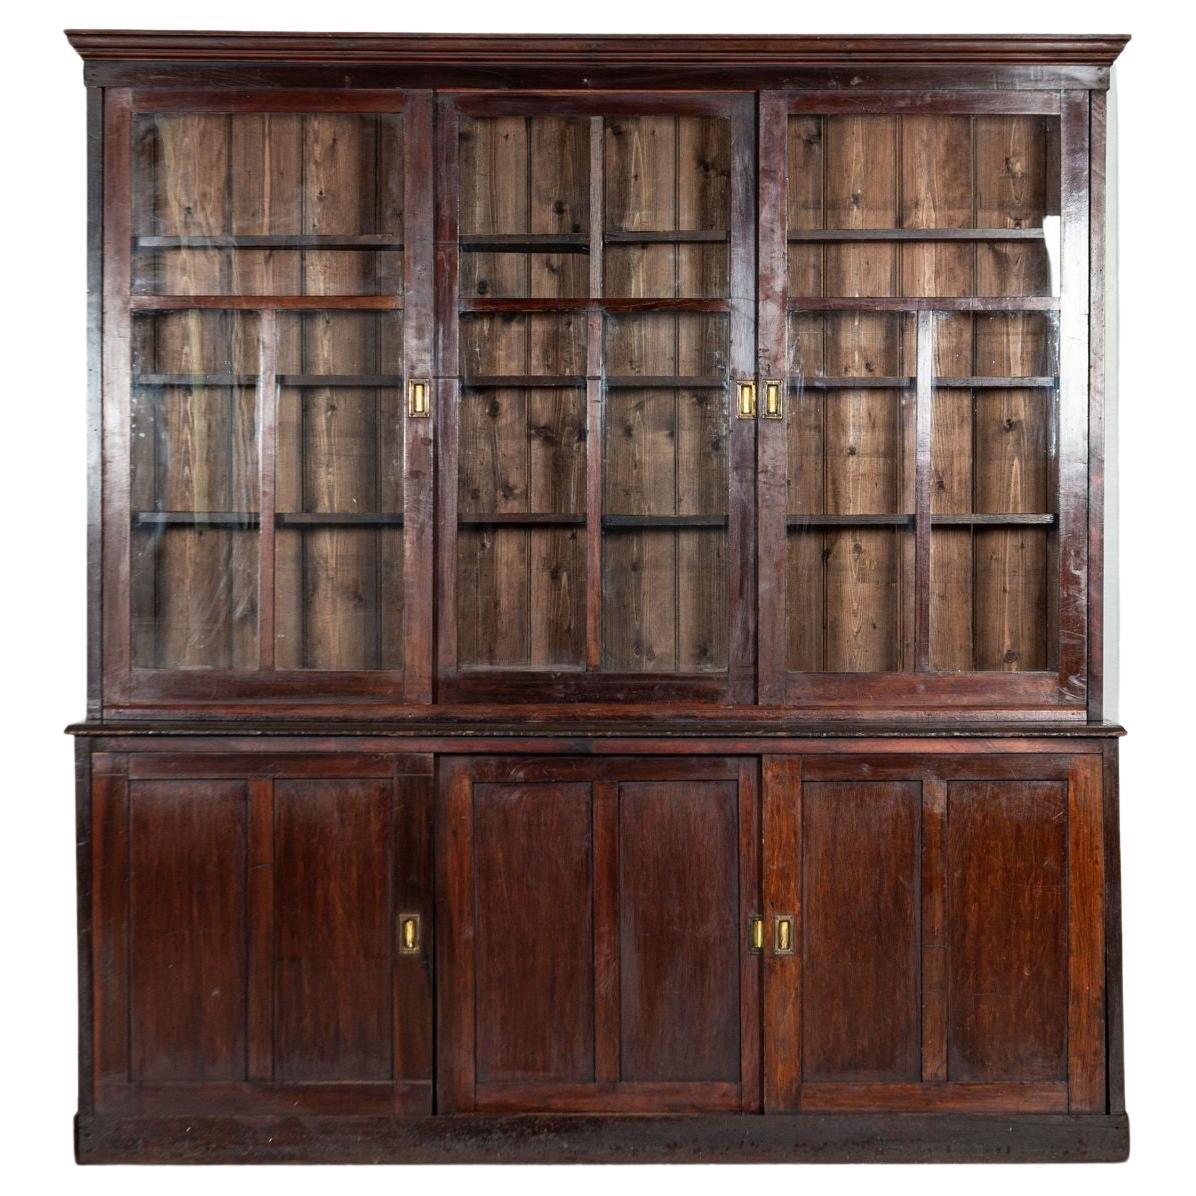 Large 19th Century English Mahogany & Pine Haberdashery Glazed Cabinet